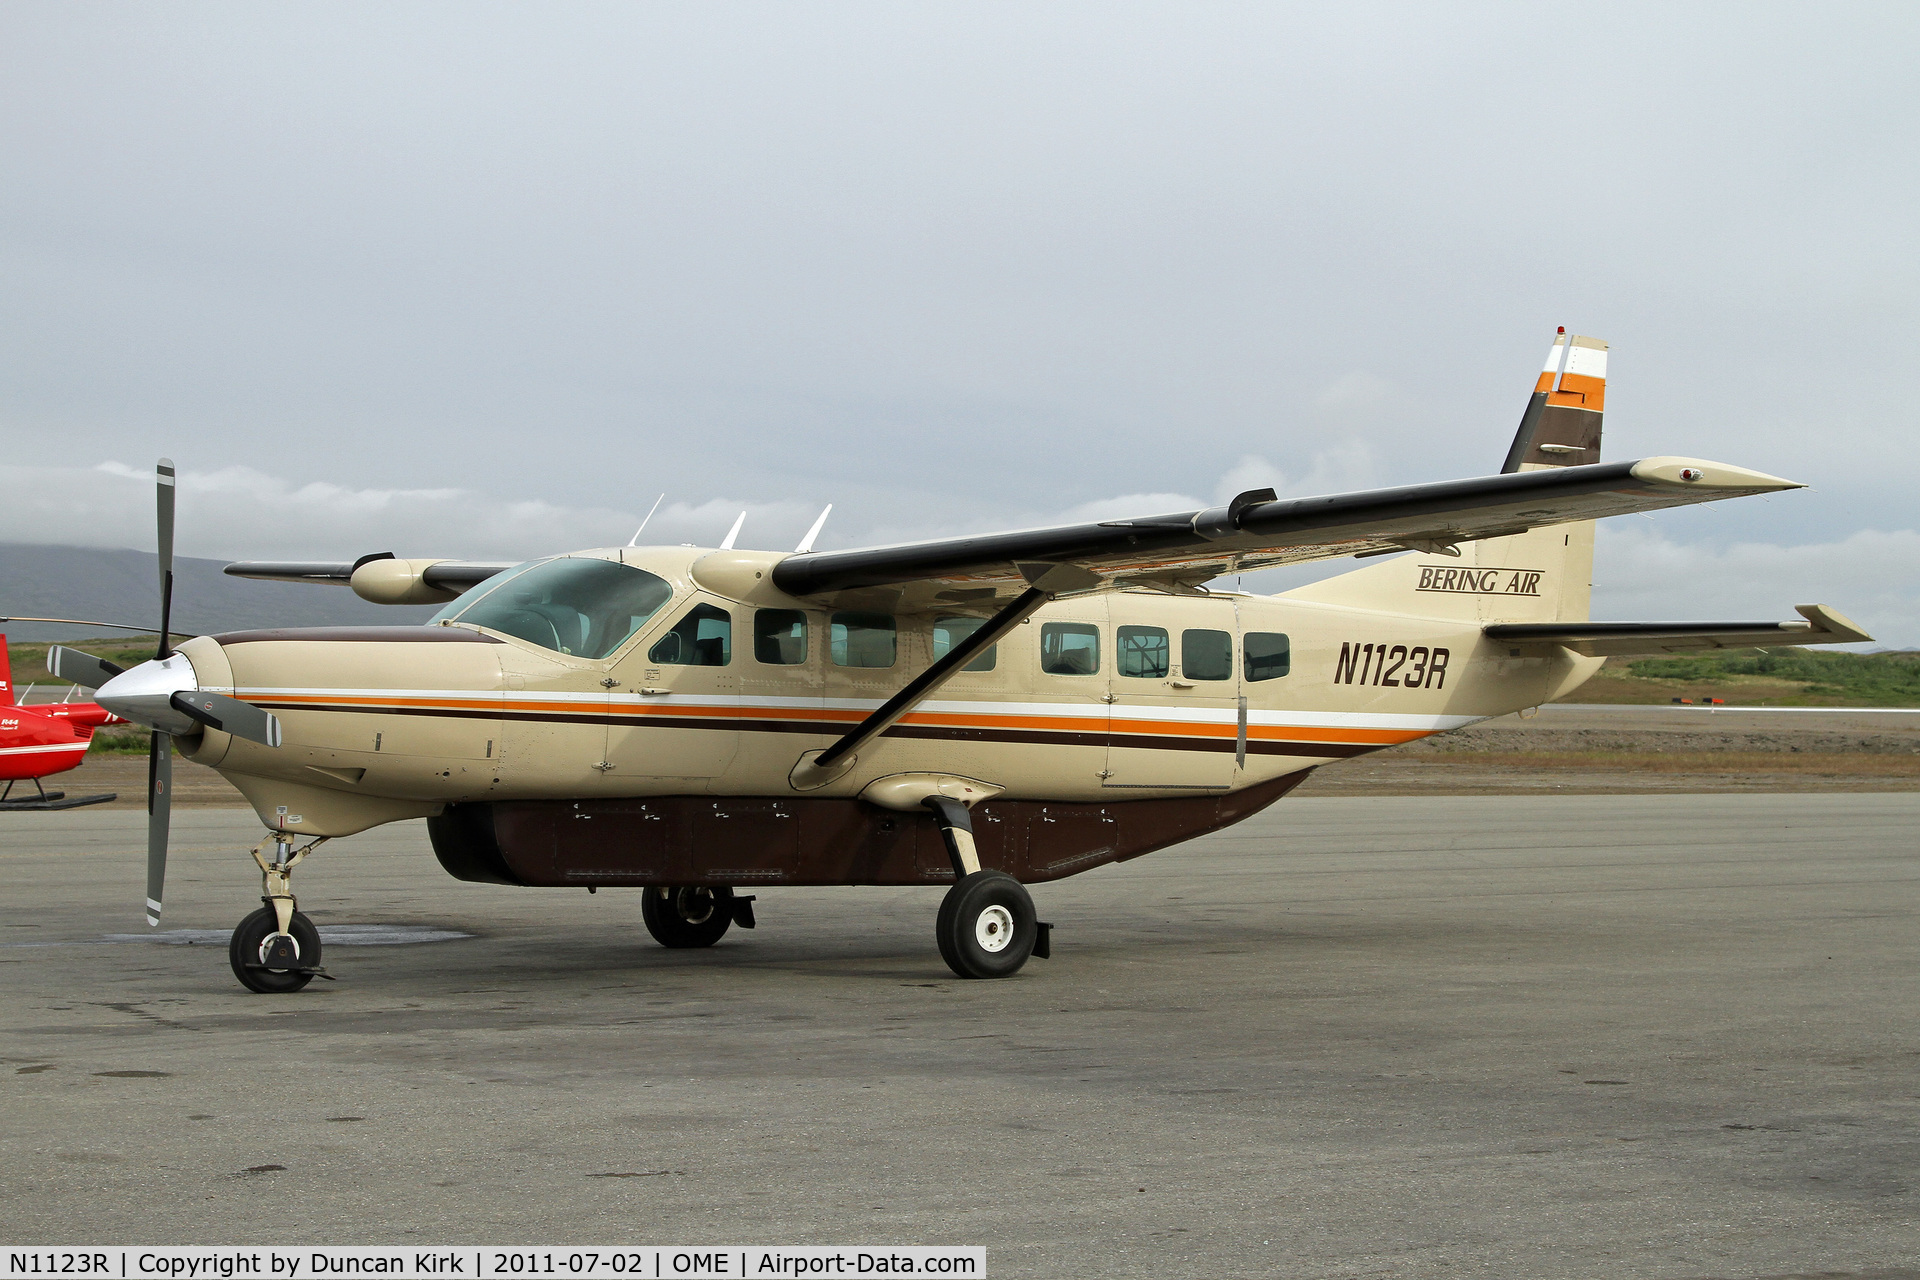 N1123R, 1994 Cessna 208B Grand Caravan C/N 208B-0395, Bering Air has several Caravans